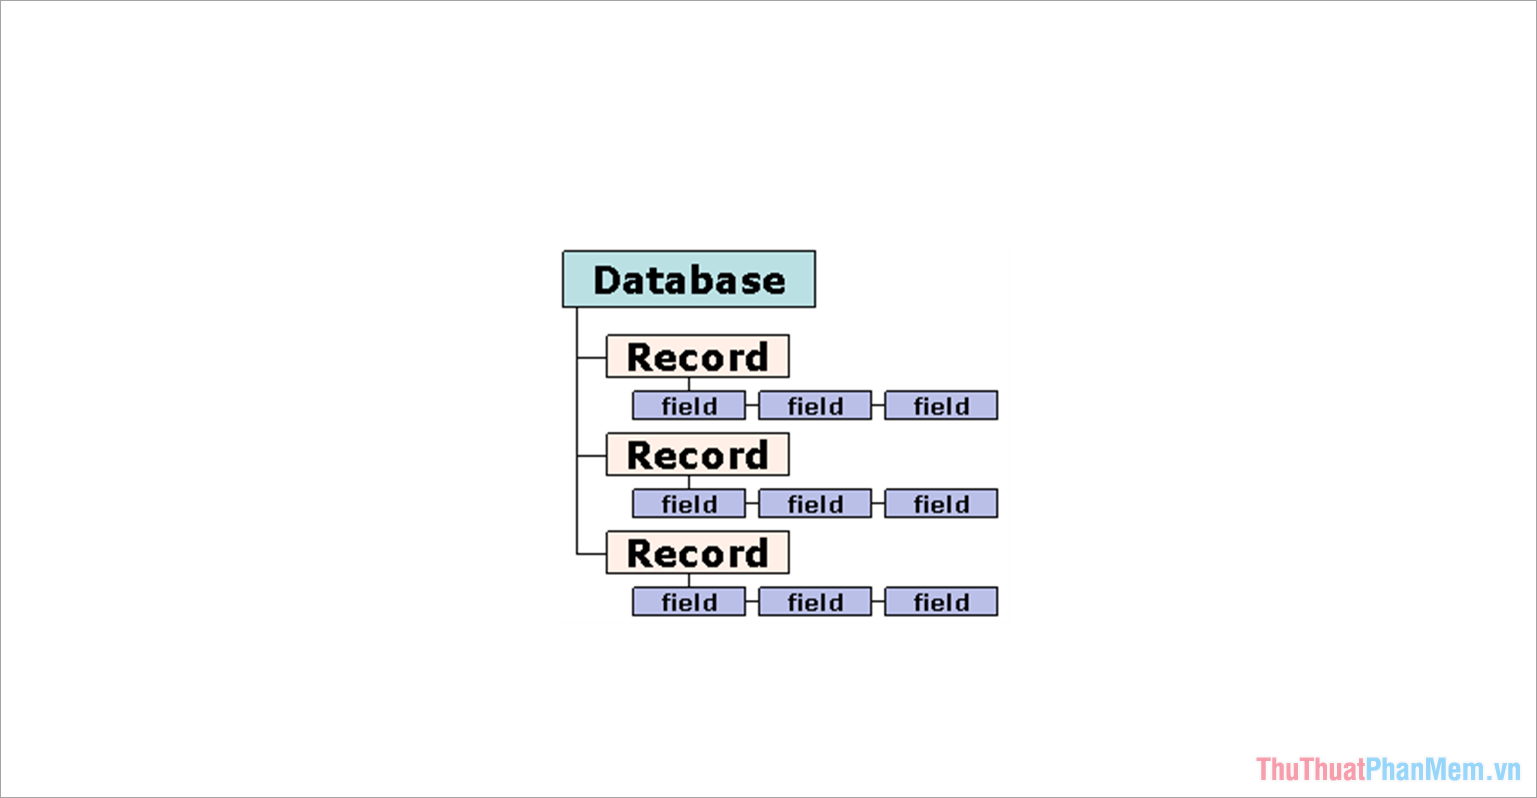 Cơ sở dữ liệu quan hệ - Database có nhiệm vụ sắp xếp dữ liệu thành các tập hợp của bản ghi cơ sở dữ liệu